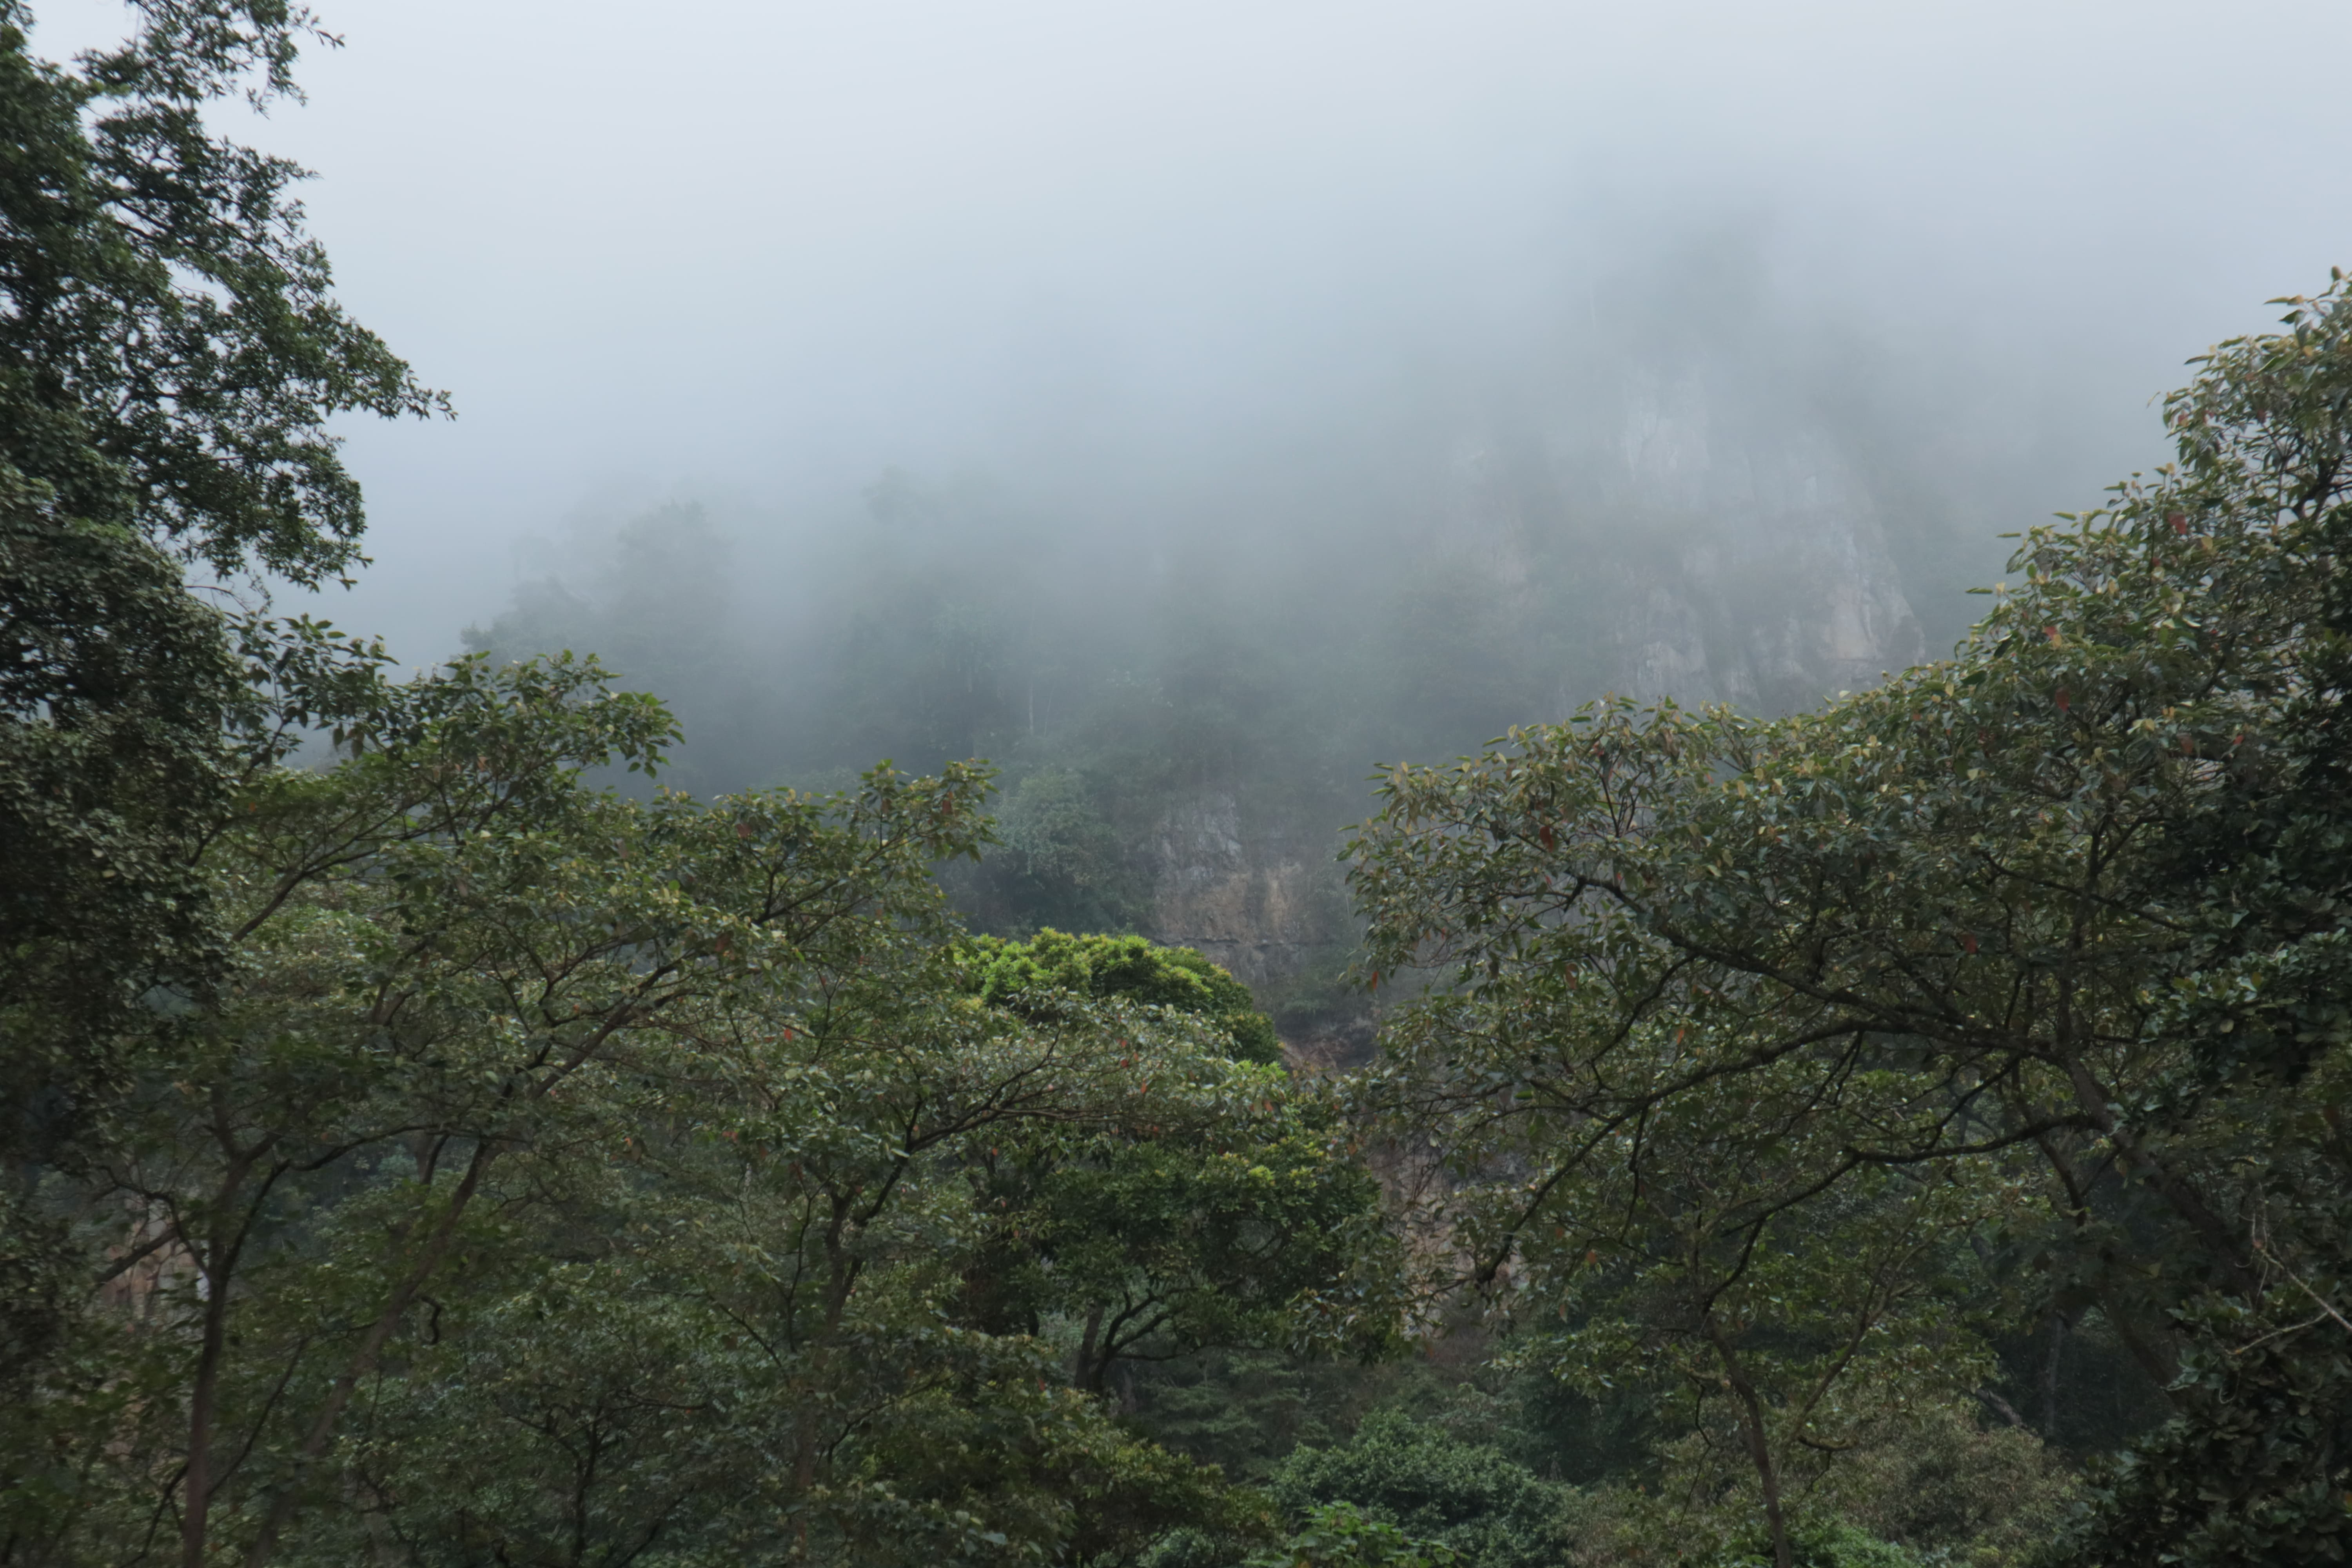 Los escarpes, grandes paredes rocosas que ayudan a retener las corrientes de aire y permiten la condensación de la niebla, son un paisaje común en la región del Tequendama, Parque Natural Chicaque.